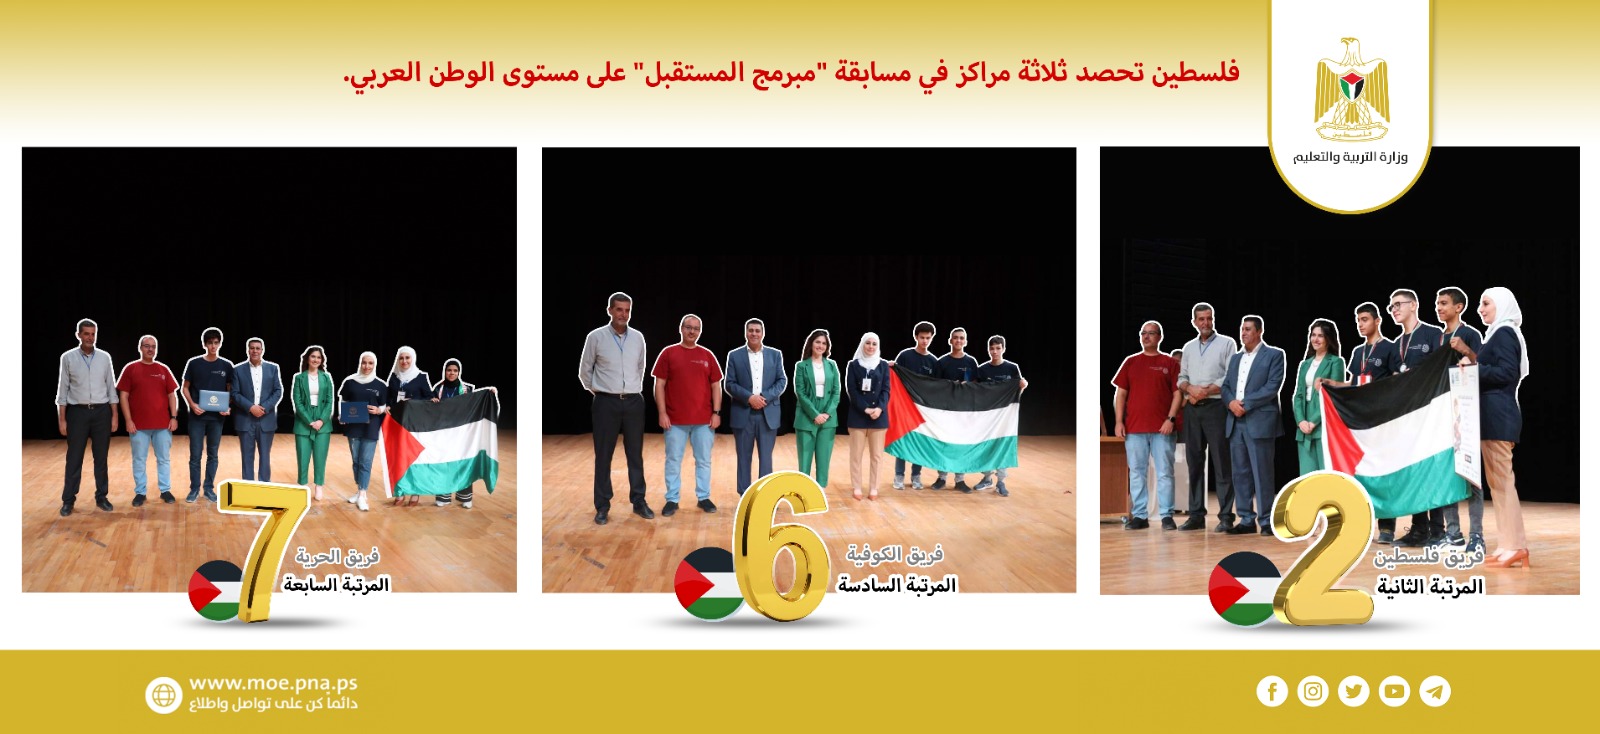 فلسطين تتالق عربياً في مسابقة "مبرمج المستقبل"